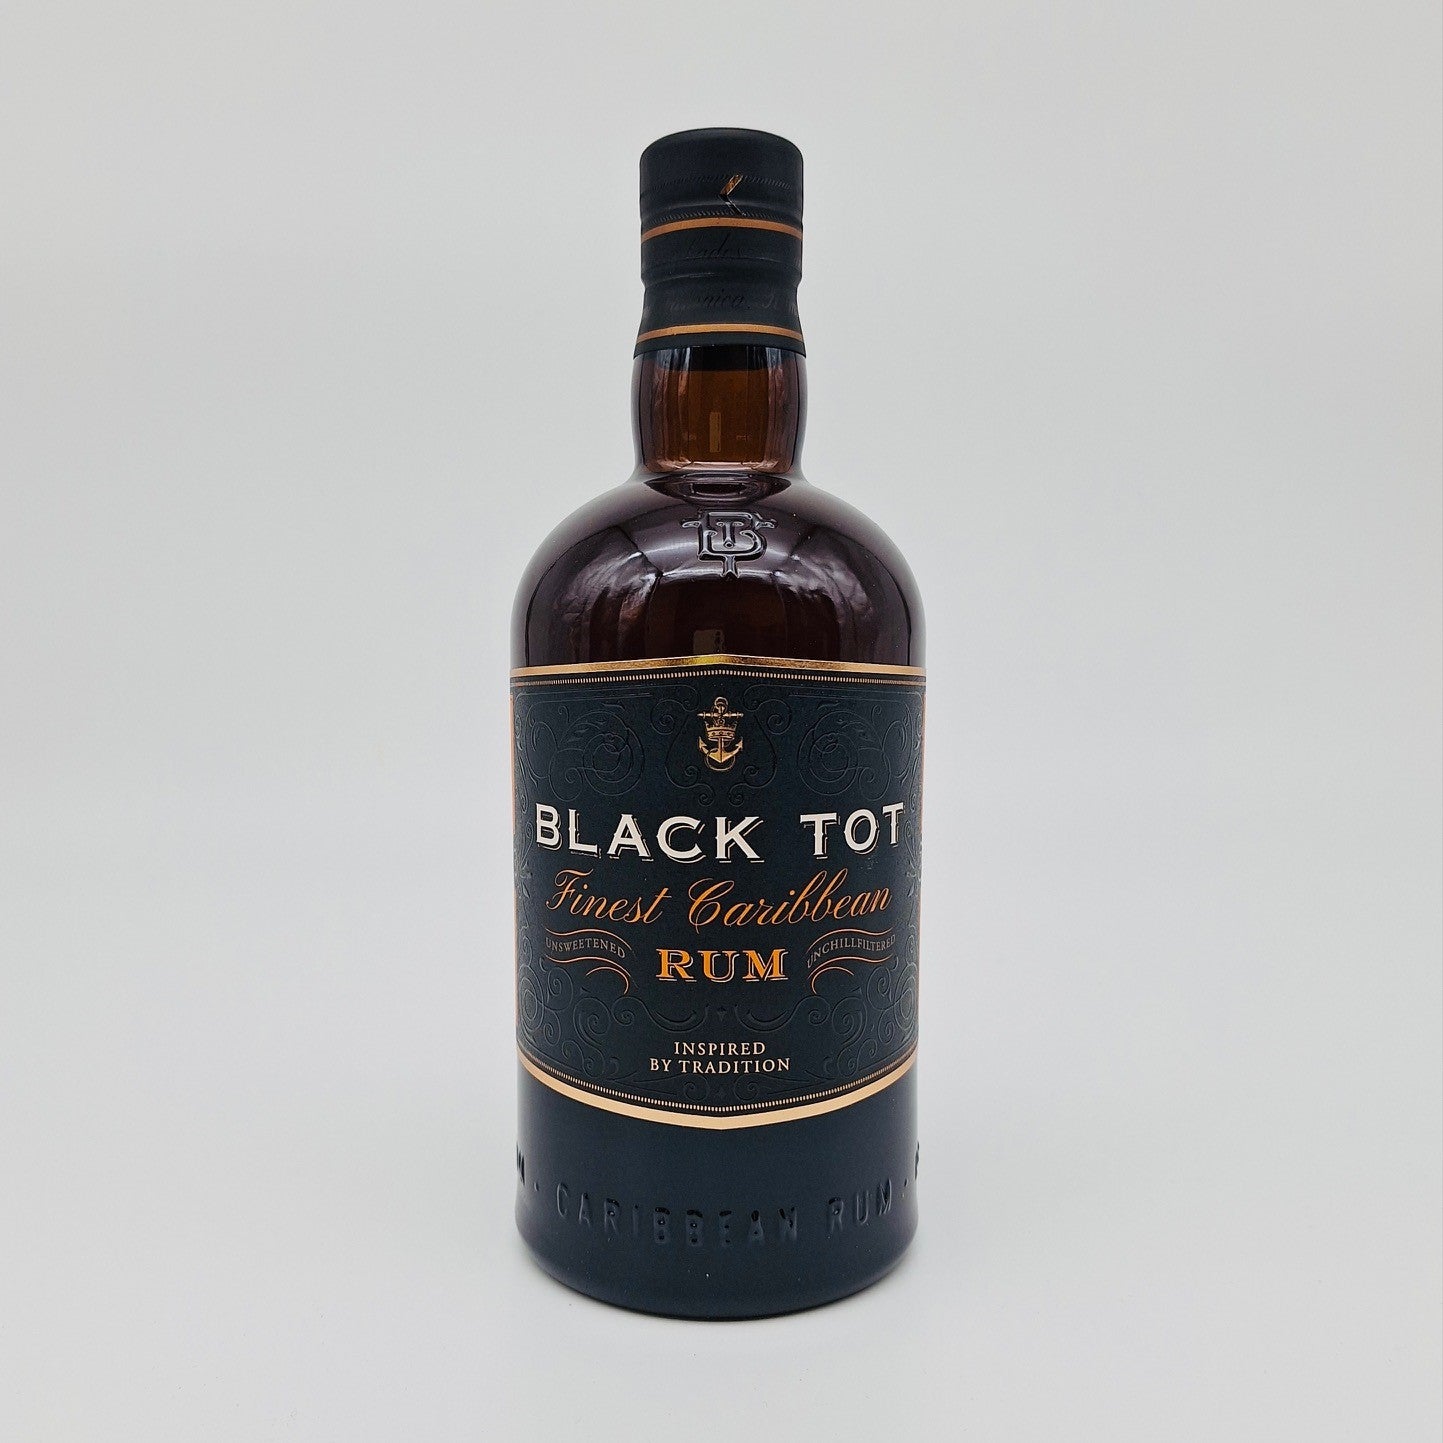 Black Tot Caribbean Rum